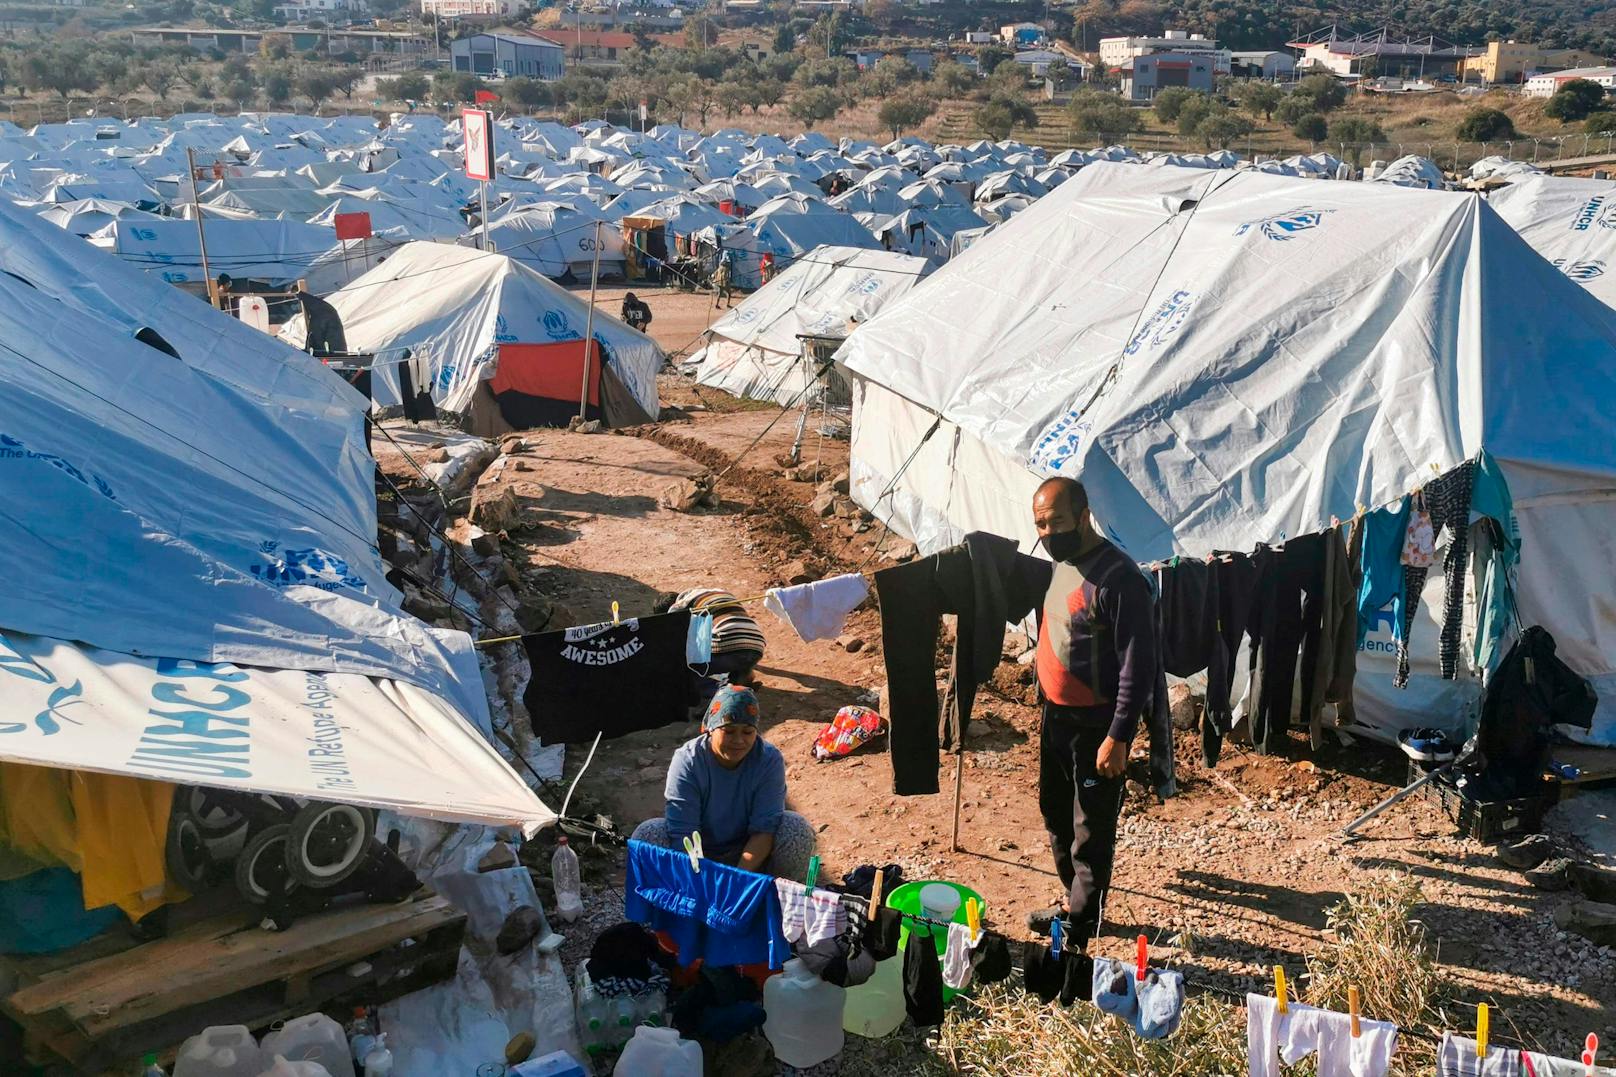 Die Situation der Flüchtlinge sei "dramatisch und menschenunwürdig".&nbsp;